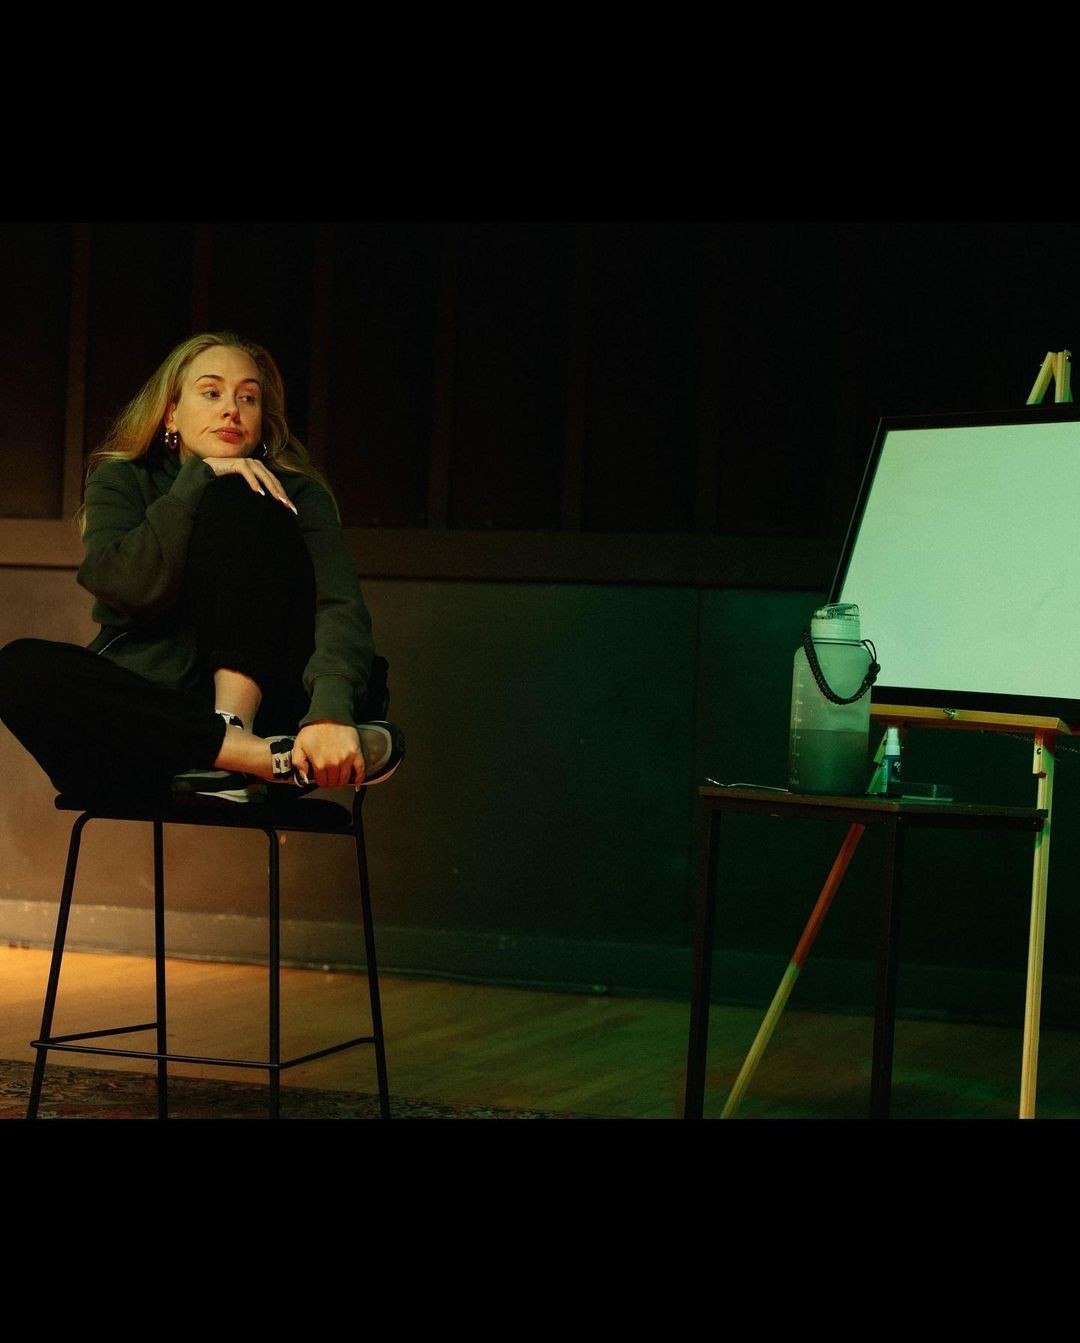 Adele agita a web ao postar fotos de ensaio antes de show (Foto: reprodução/ Instagram)